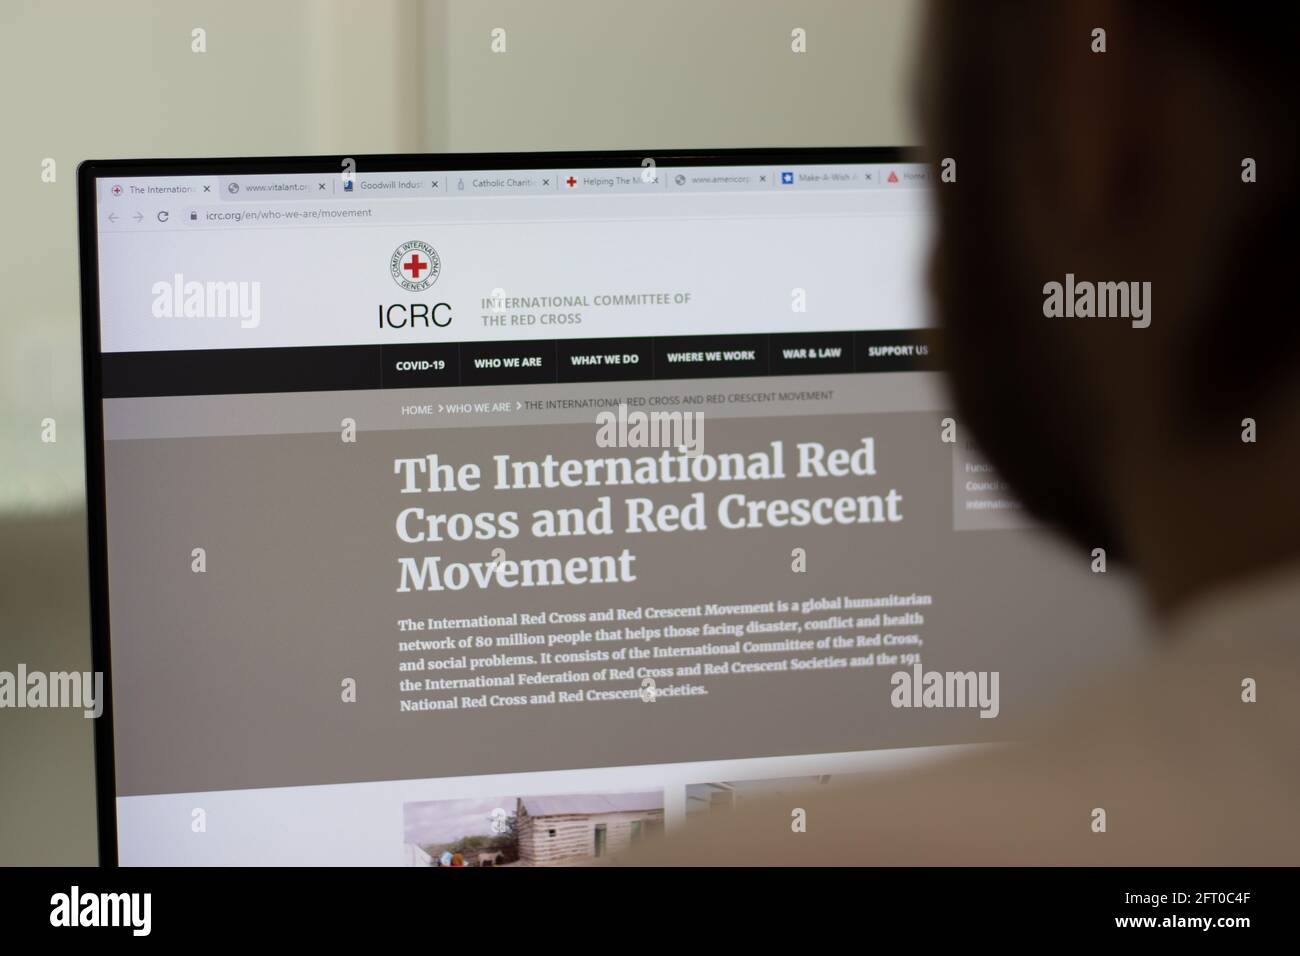 New York, USA - 1 maggio 2021: International Red Cross and Red Crescent Movement il sito web della società ICRC su schermo, Editoriale illustrativo Foto Stock